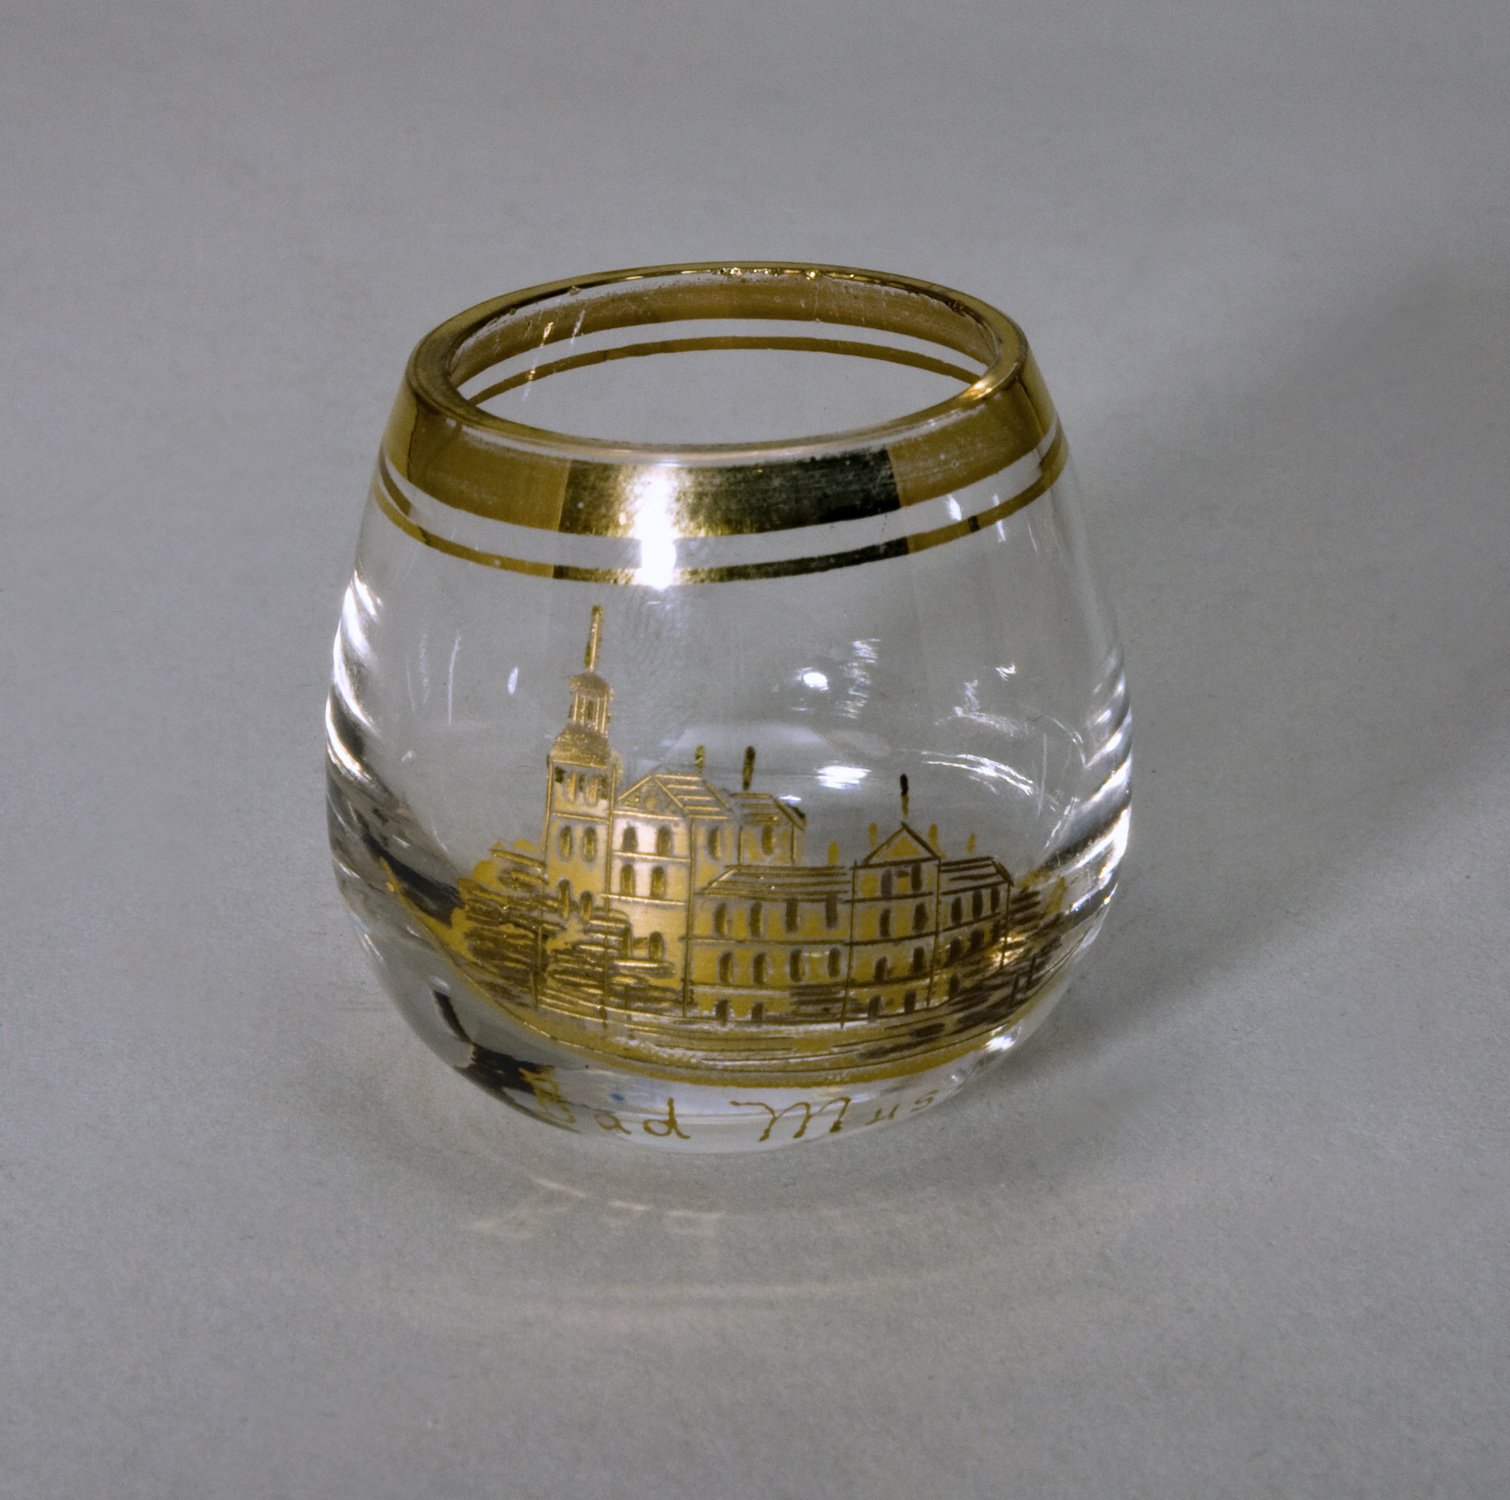 Glas "Bad Muskau" (Stiftung Domäne Dahlem - Landgut und Museum, Weiternutzung nur mit Genehmigung des Museums CC BY-NC-SA)